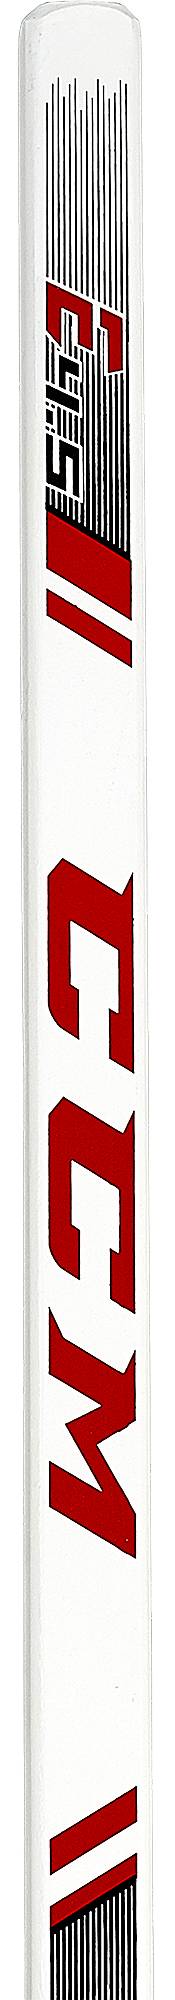 CCM Extreme Flex 4 Goalie Ice Hockey Stick - Senior product image